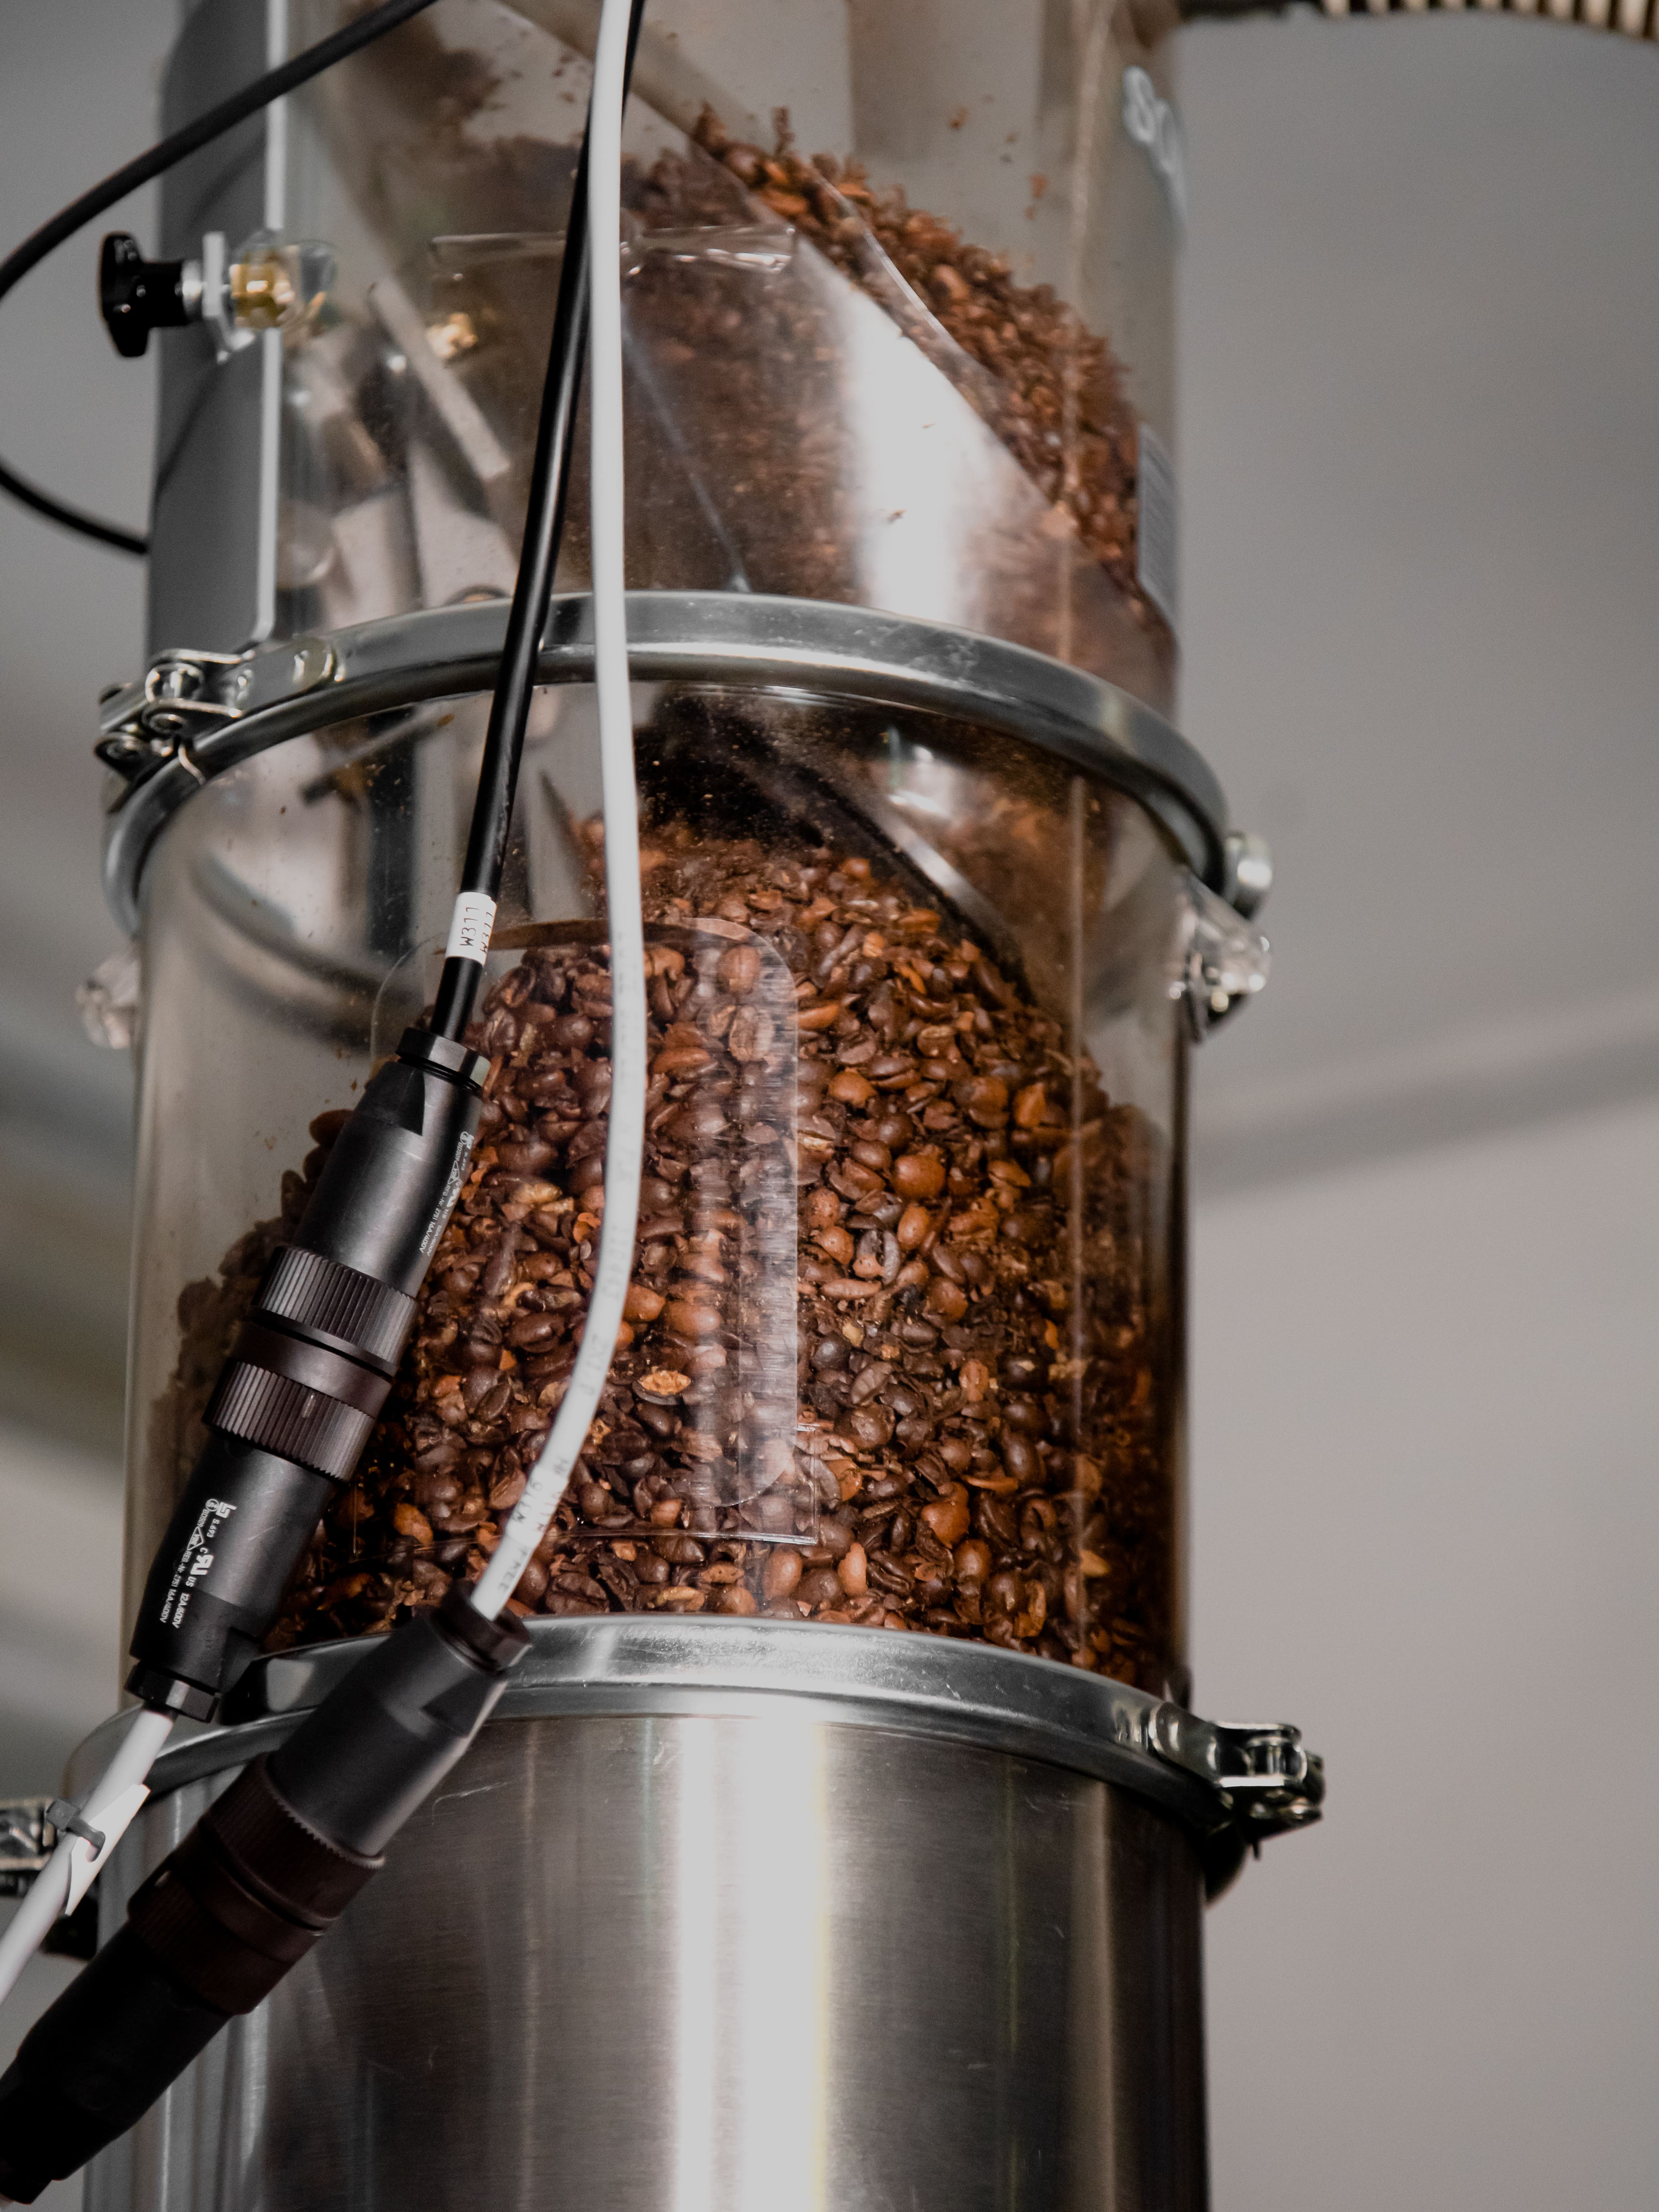 SWISS ESPRESSO EXTRACTOR: Behältnis für Kaffeebohnen vor dem Mahlen